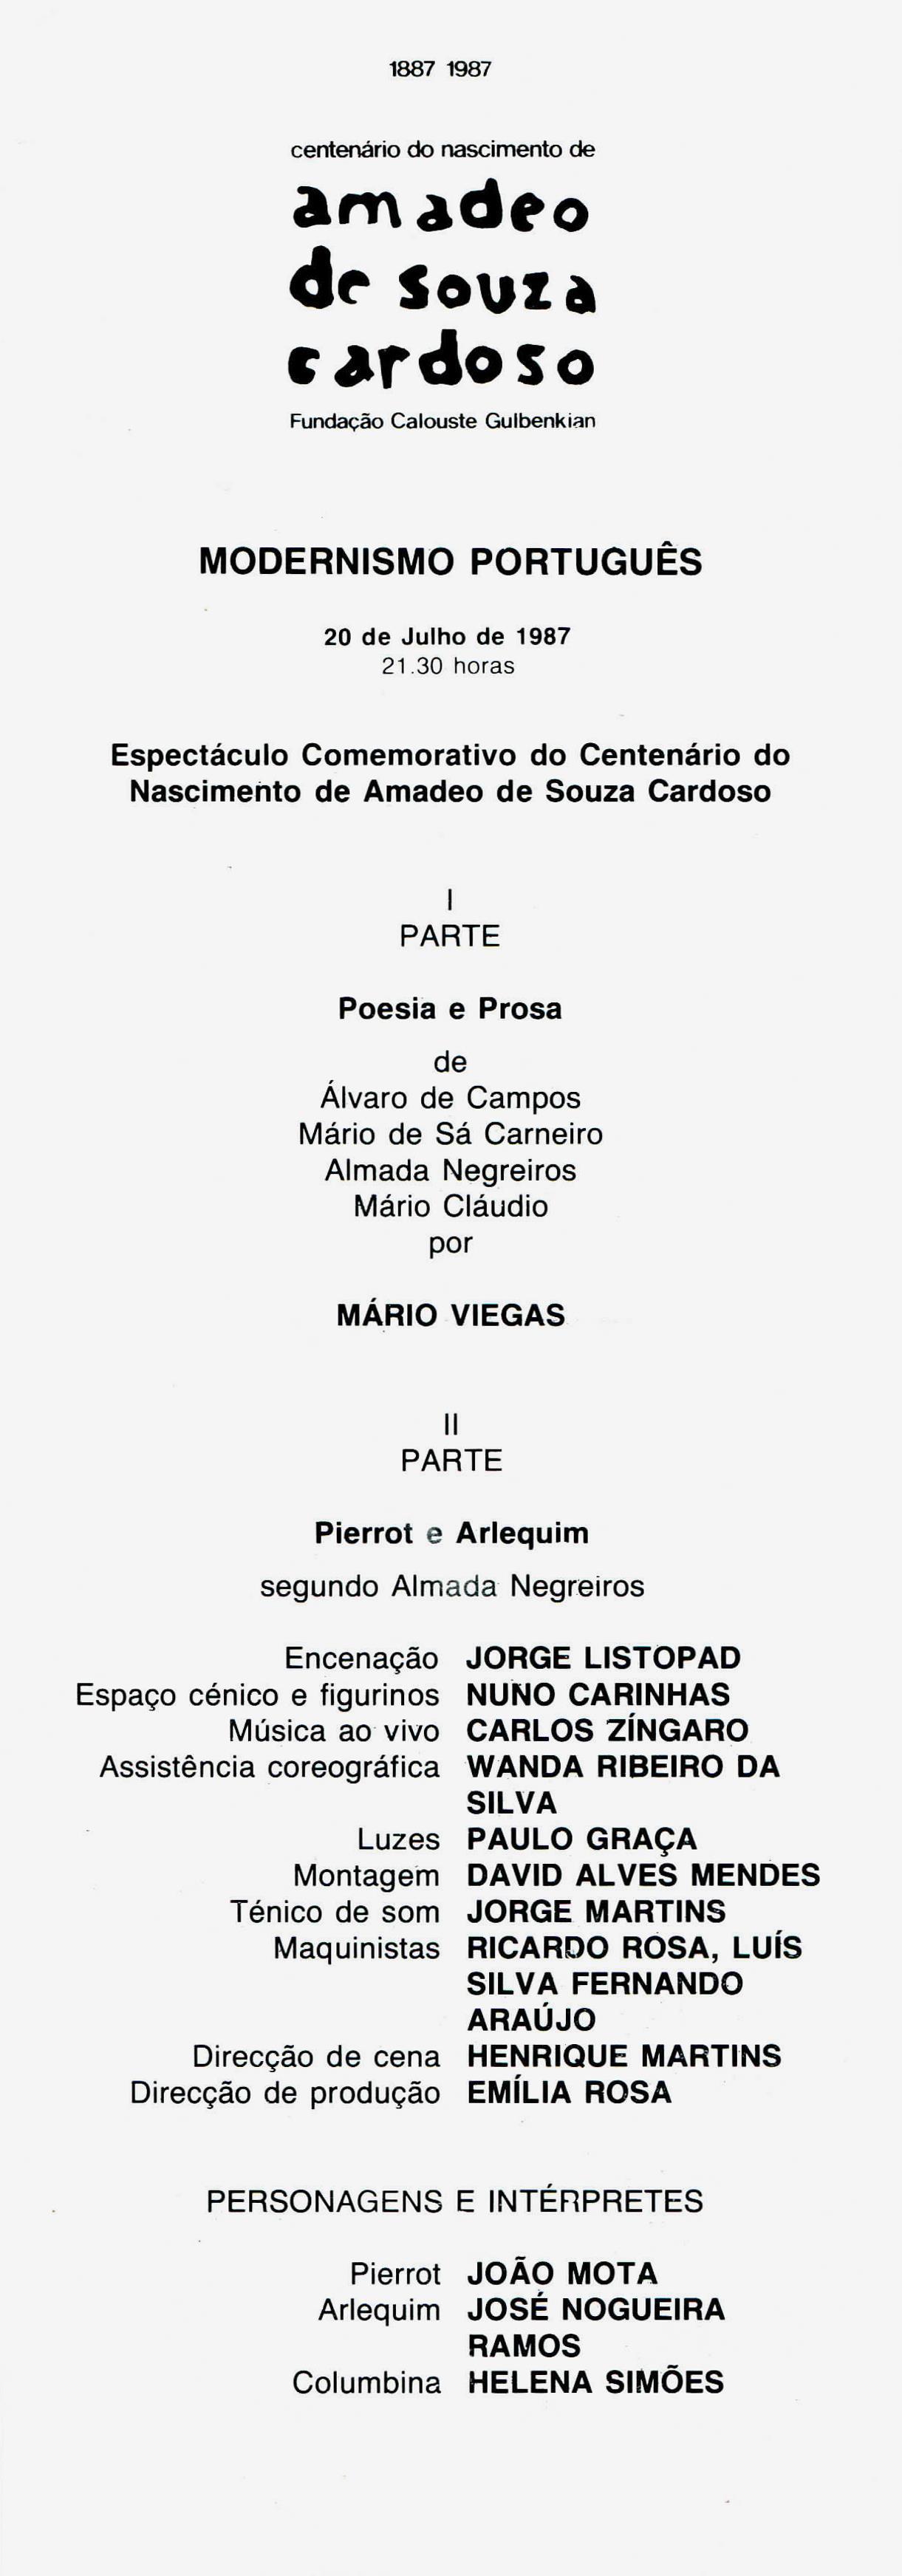 Modernismo Português. Espectáculo Comemorativo do Centenário do Nascimento de Amadeo de Souza-Cardoso, 1887 – 1987